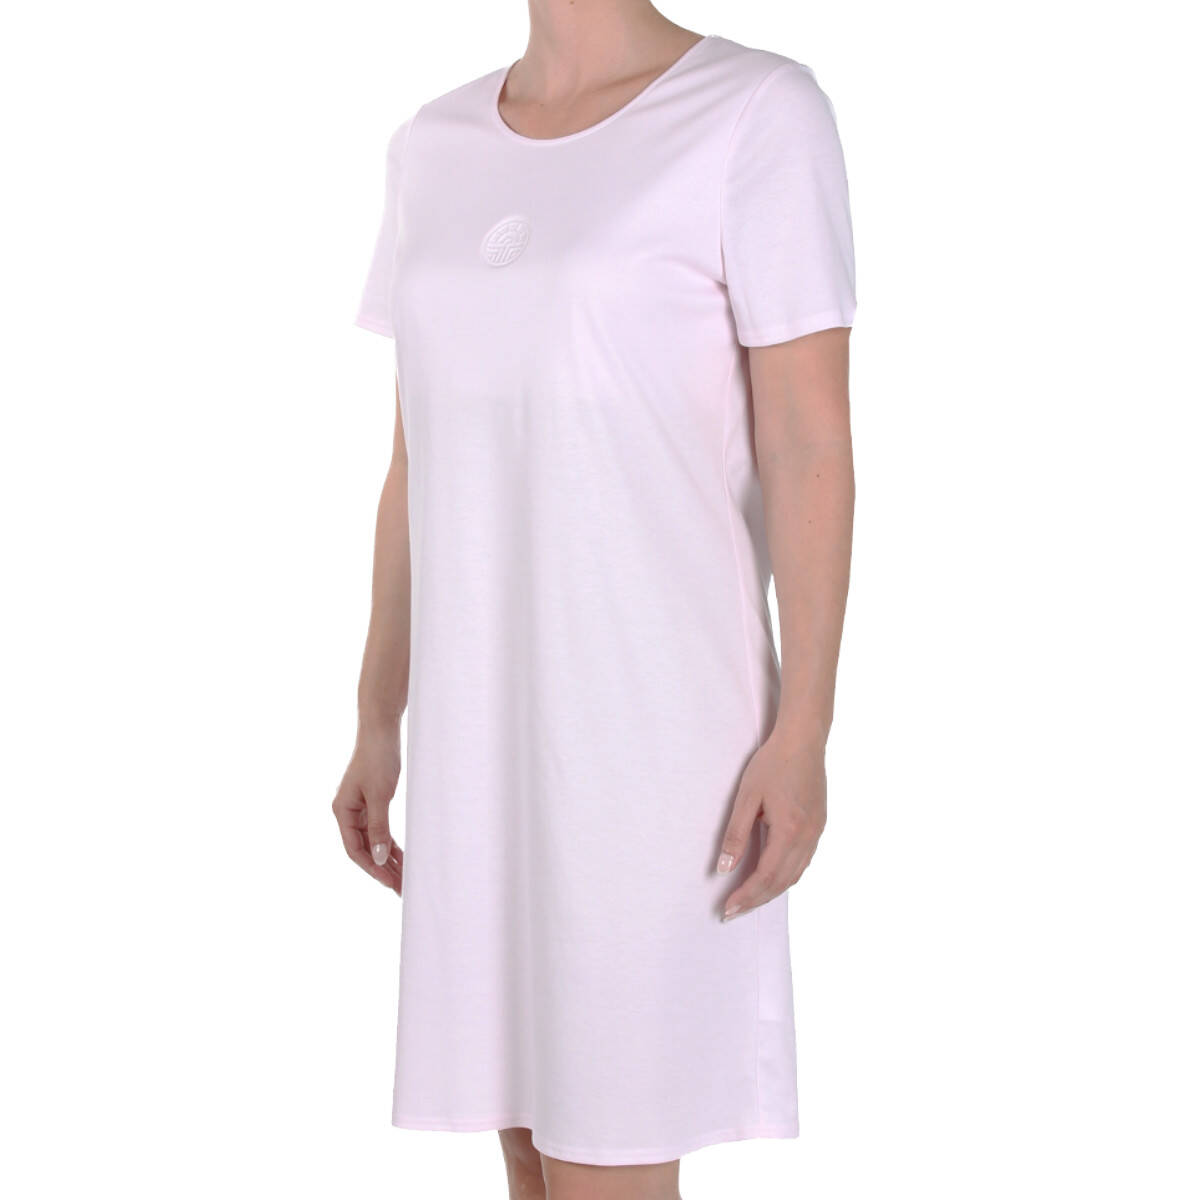 Feraud - Damen Nachthemd - 90 cm lang - Kurzarm, 79,95 €